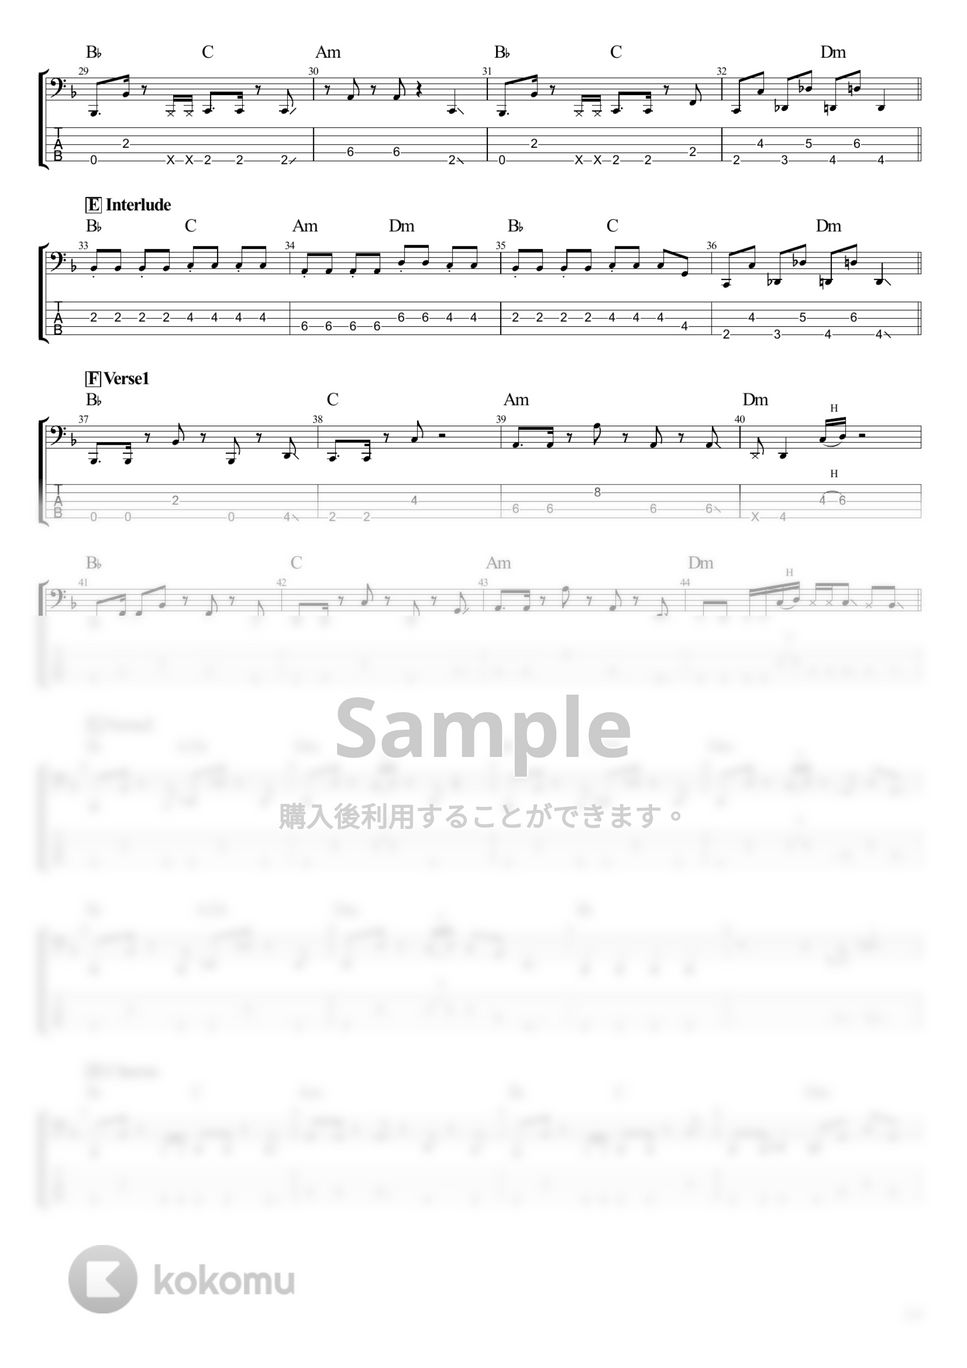 佐藤千亜妃 - 線香花火 feat.幾田りら (ベース Tab譜 5弦) by T's bass score